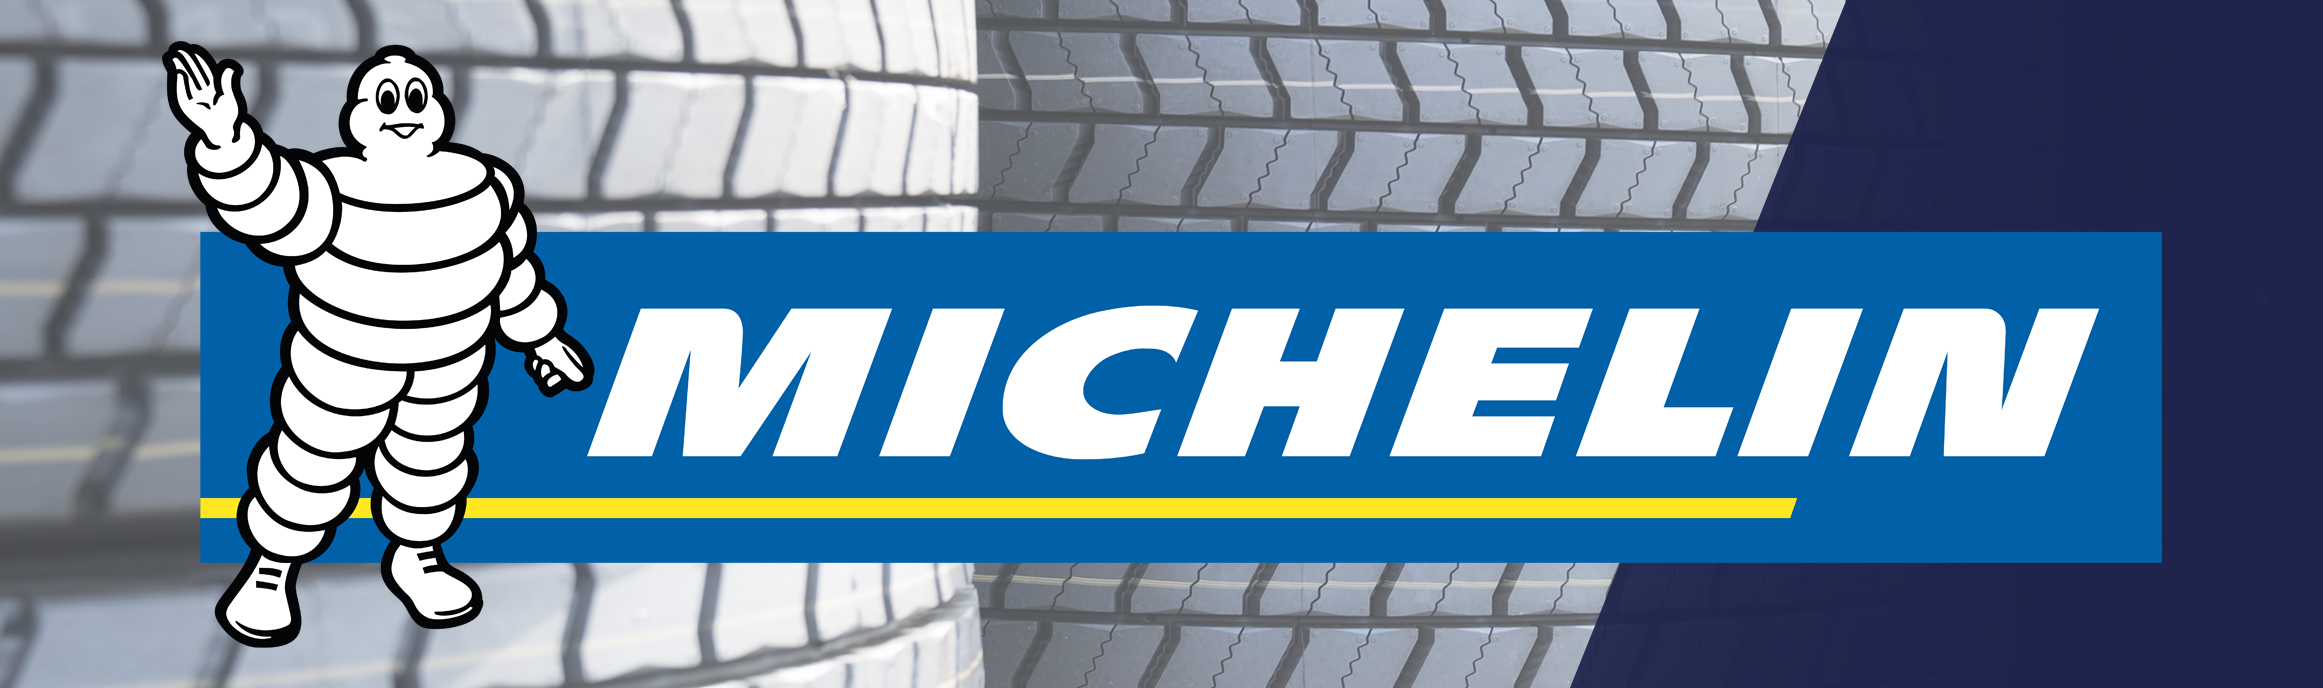 Michelin_banner